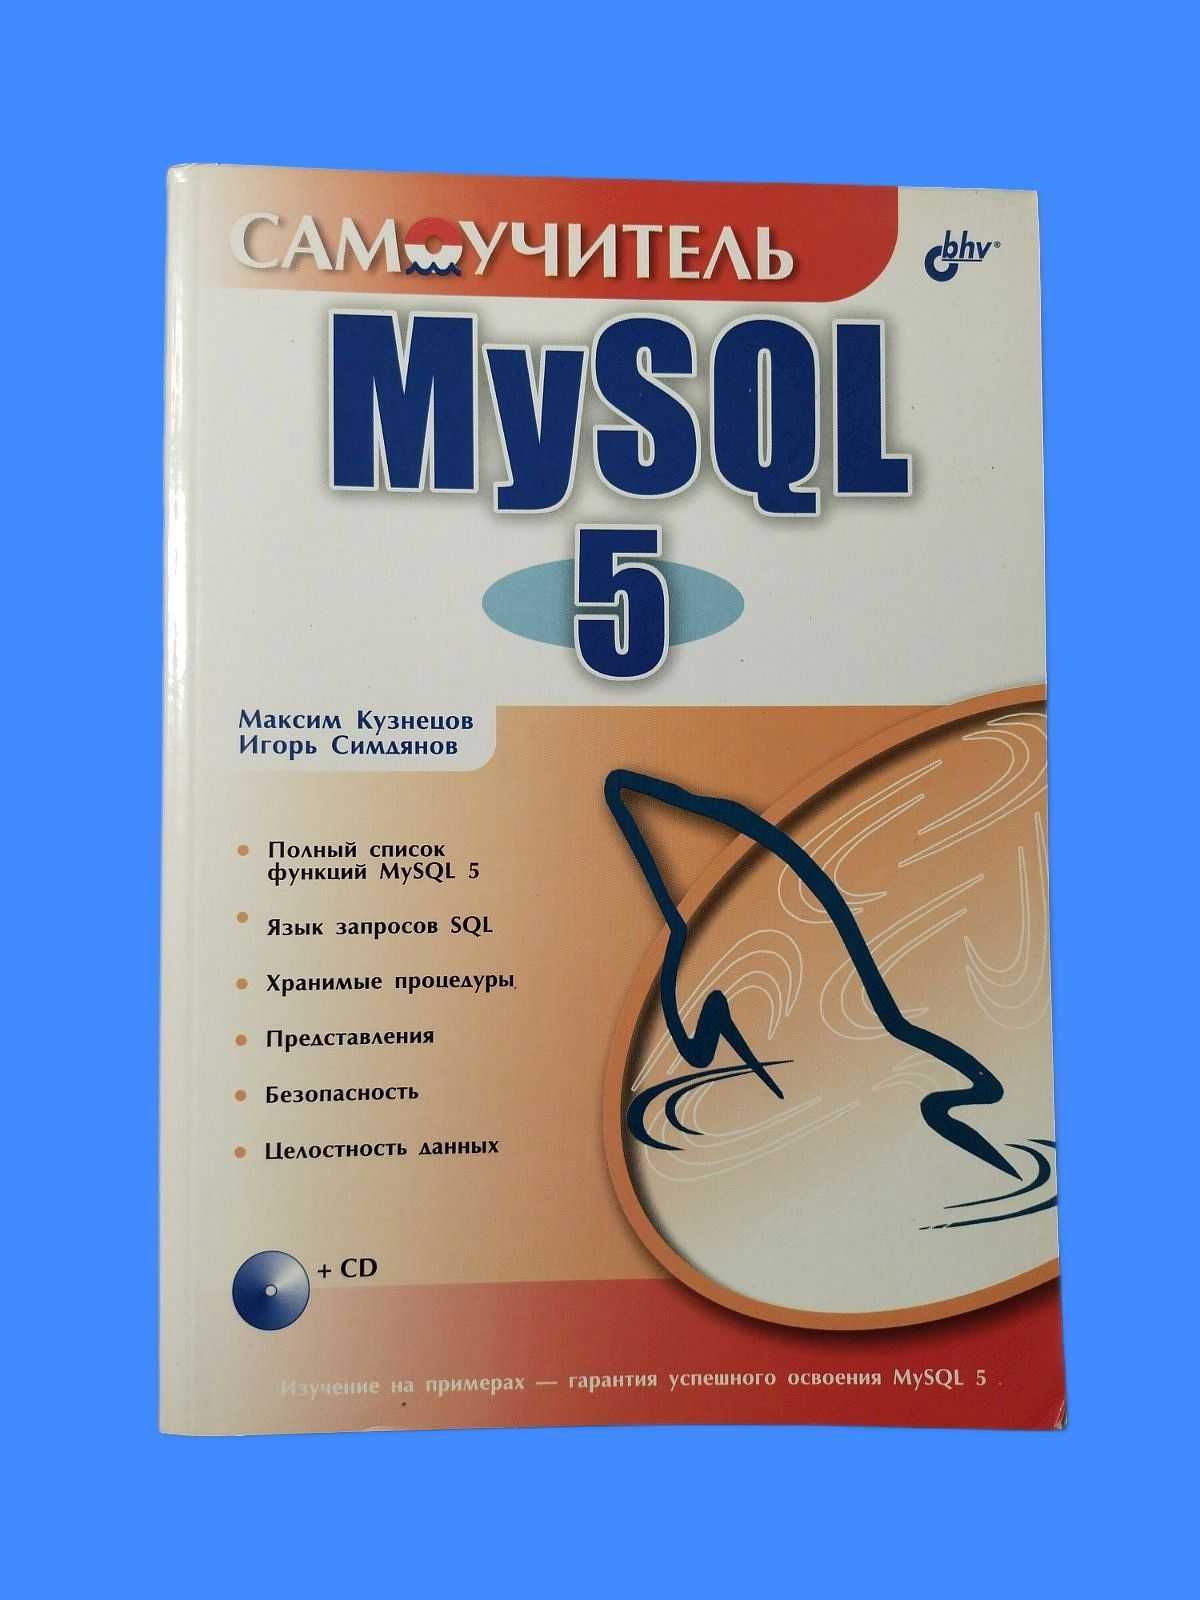 Самоучитель MySQL 5 (Кузнецов М.И., Симдяев И.В.)